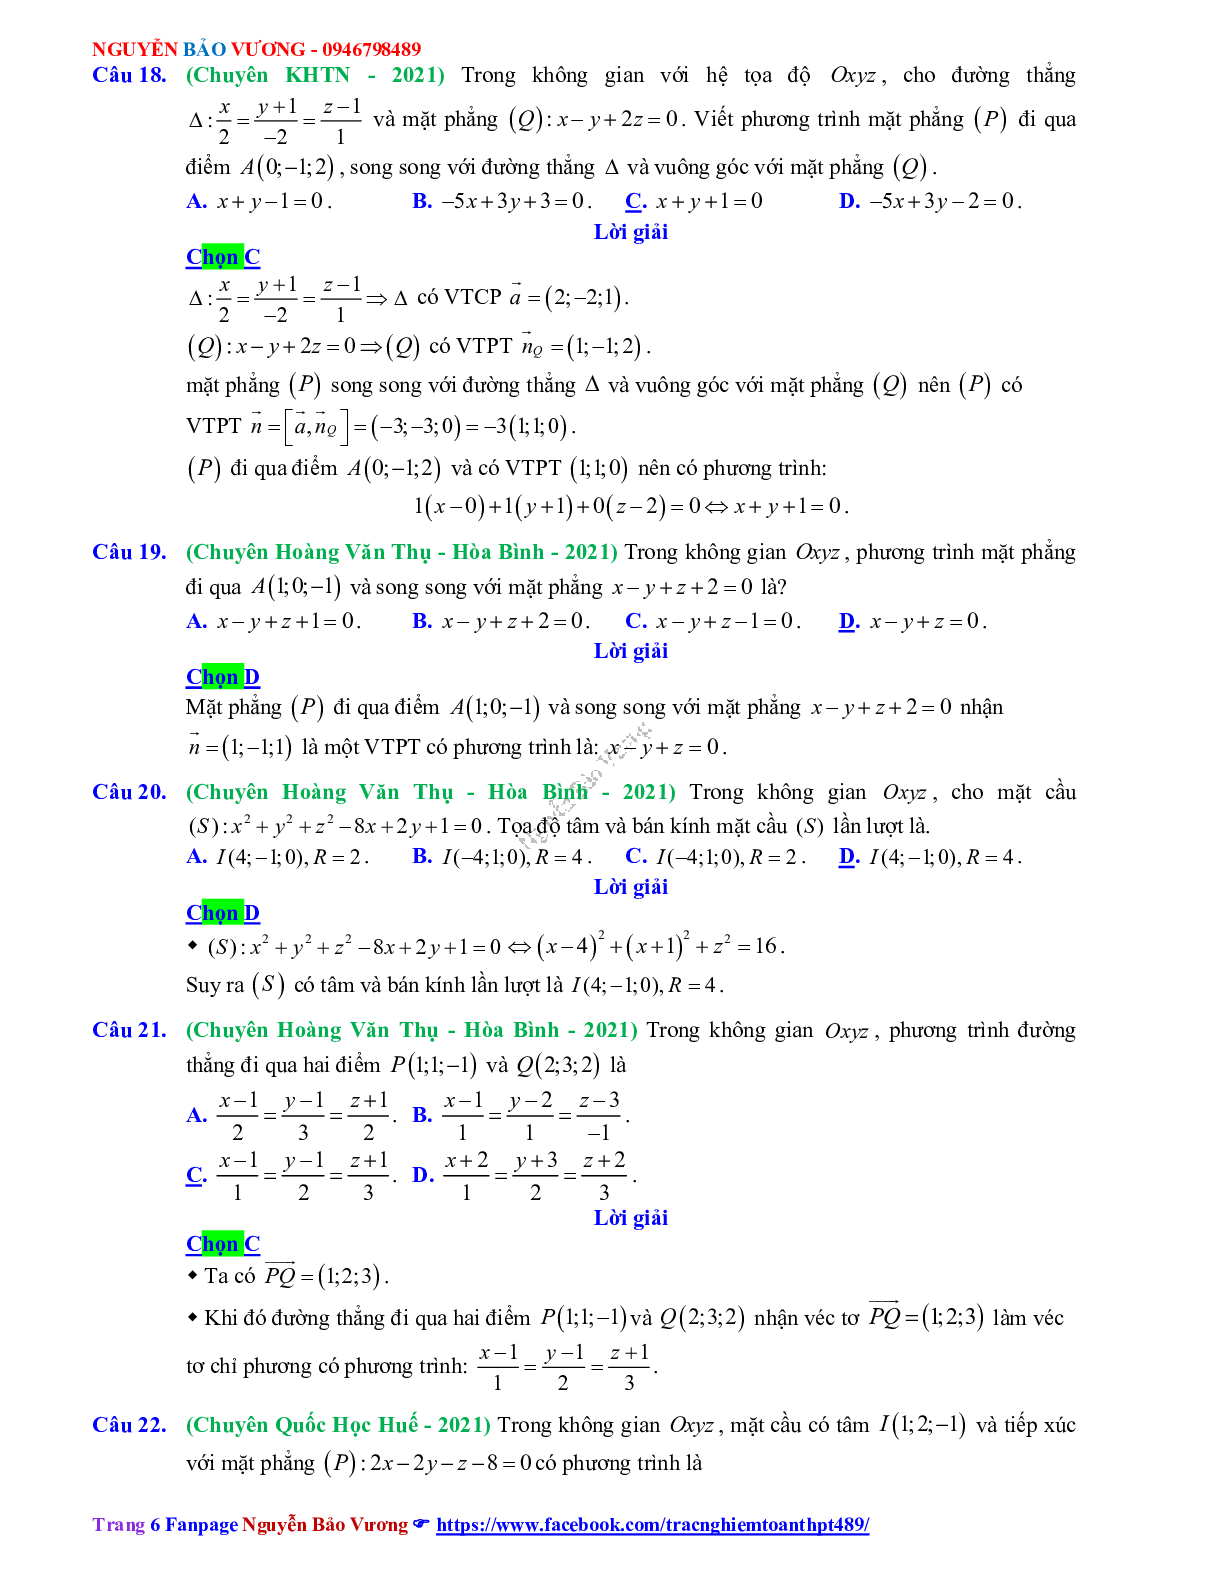 Trắc nghiệm Ôn thi THPT QG Toán 12: Đáp án phương pháp tọa độ trong không gian mức độ thông hiểu (trang 6)